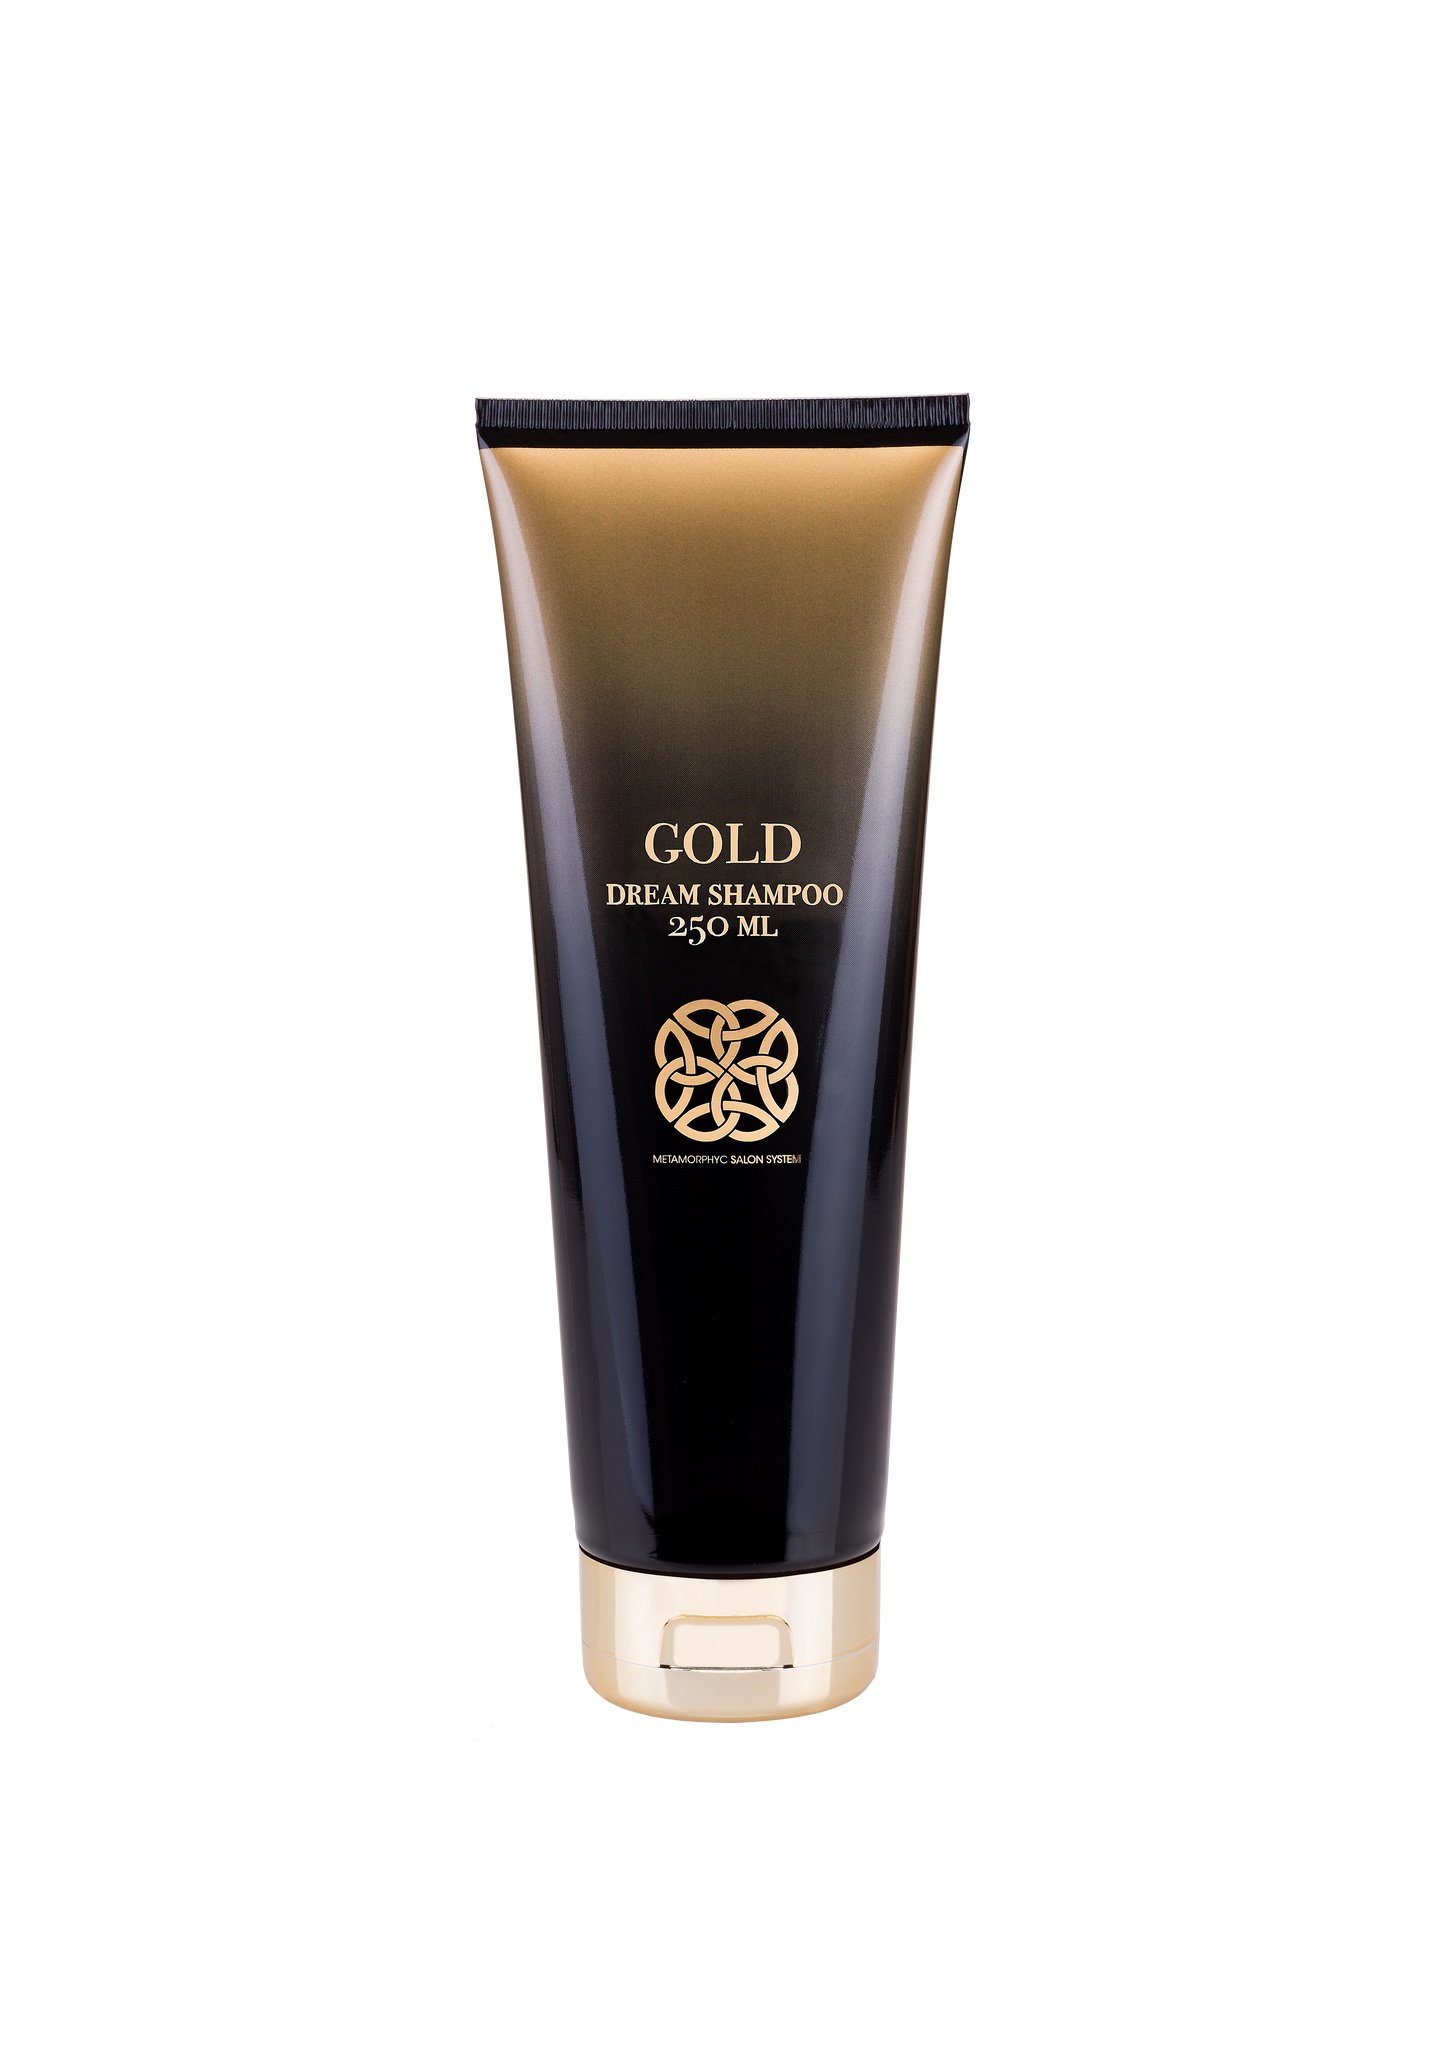 GOLD Dream shampoo 250ml